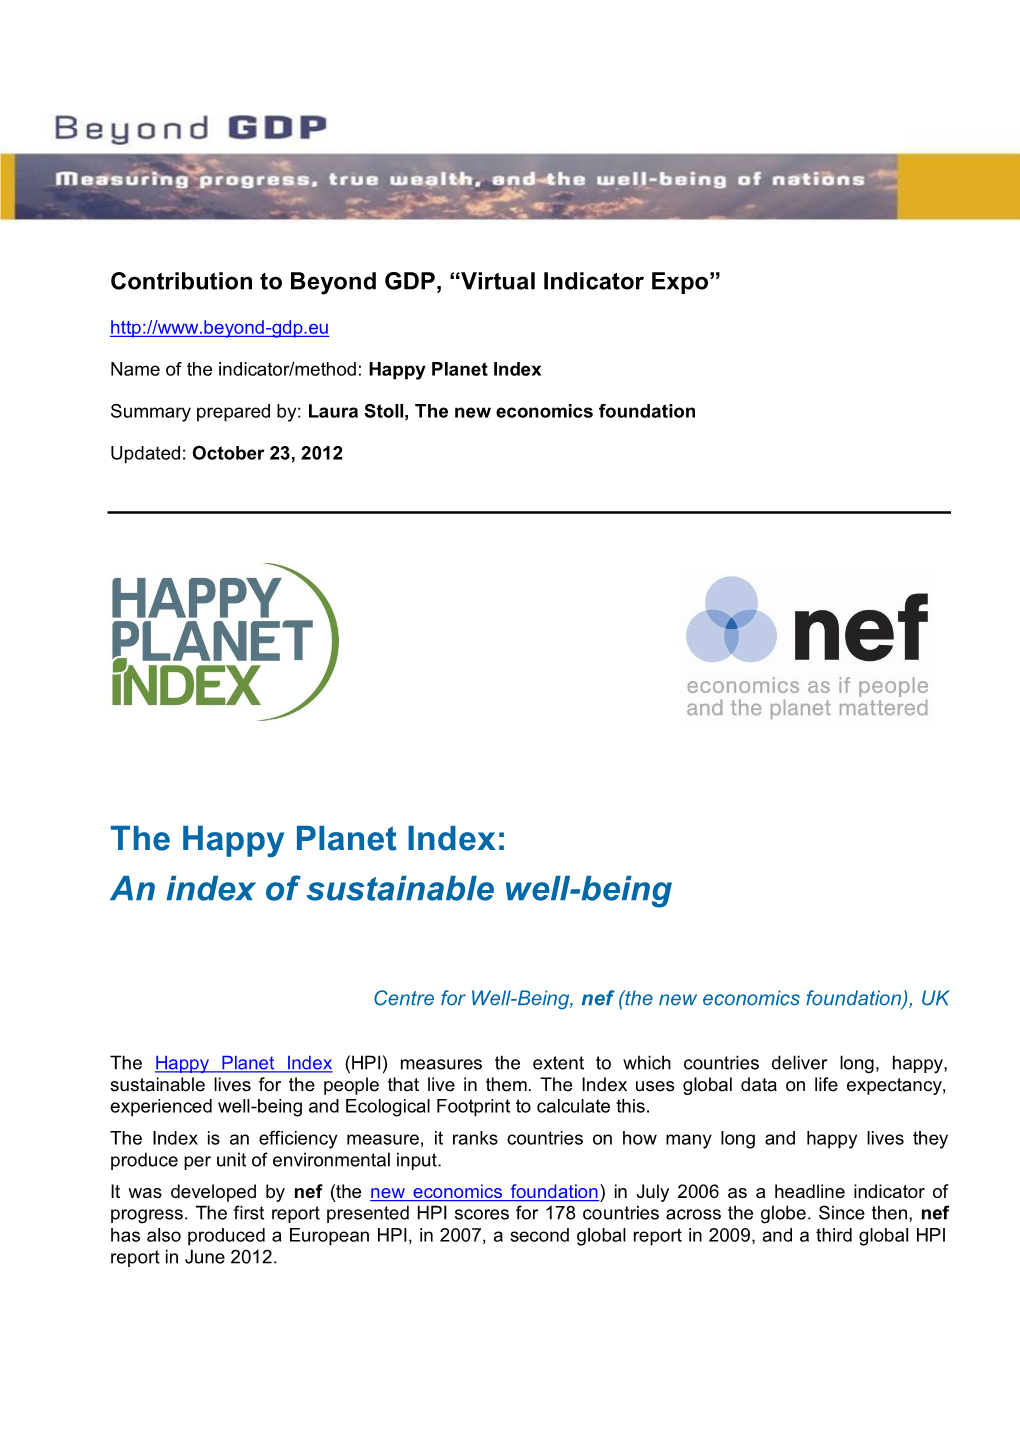 Happy Planet Index